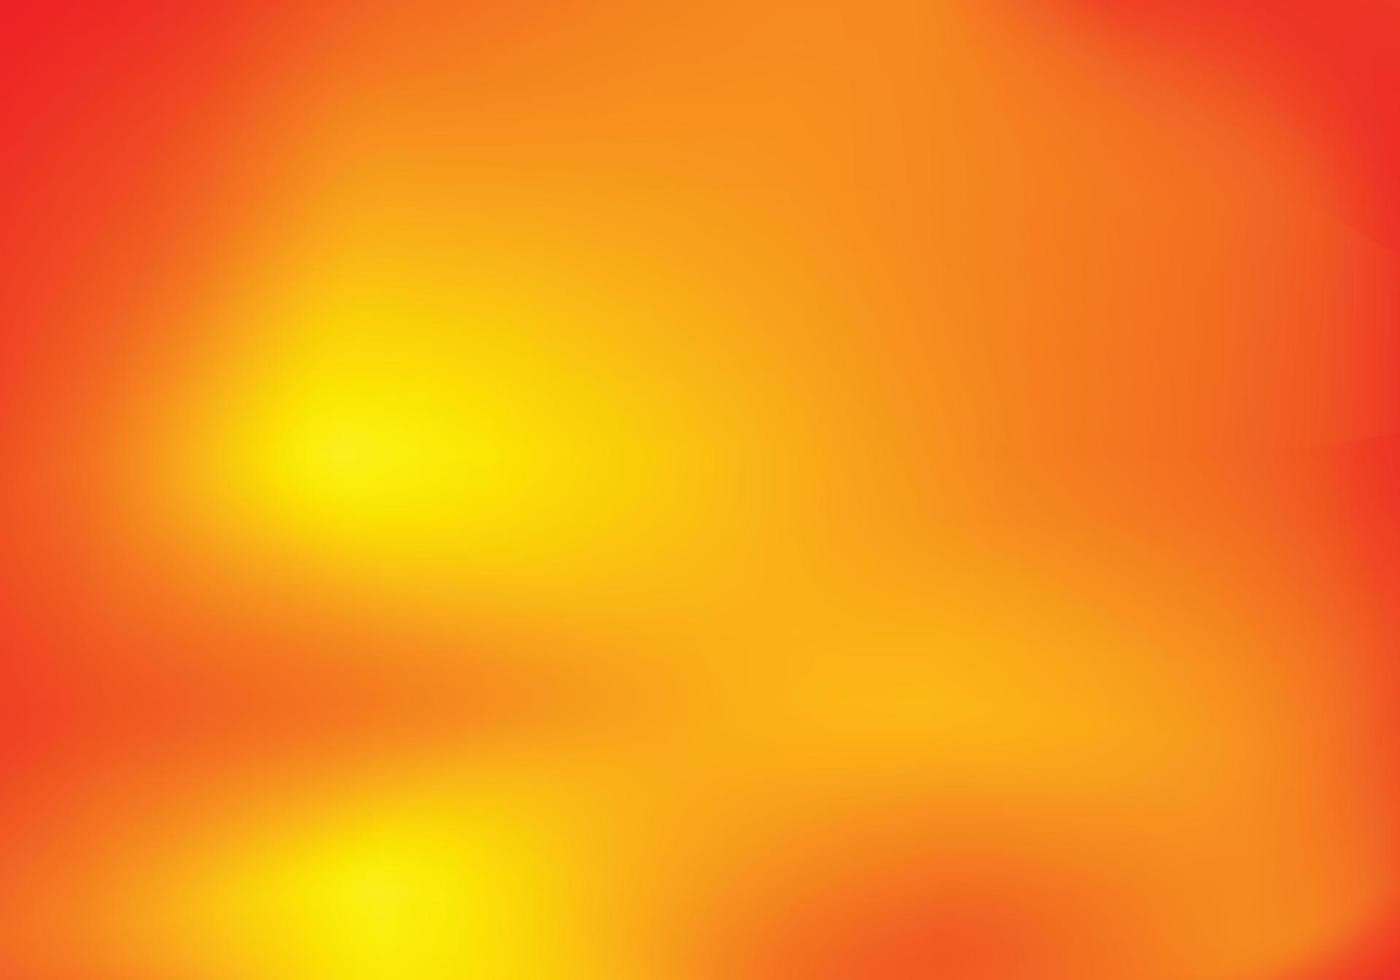 un fondo abstracto compuesto por una mezcla de colores degradados de amarillo, naranja, rojo, de claro a oscuro. vector de banners adecuado